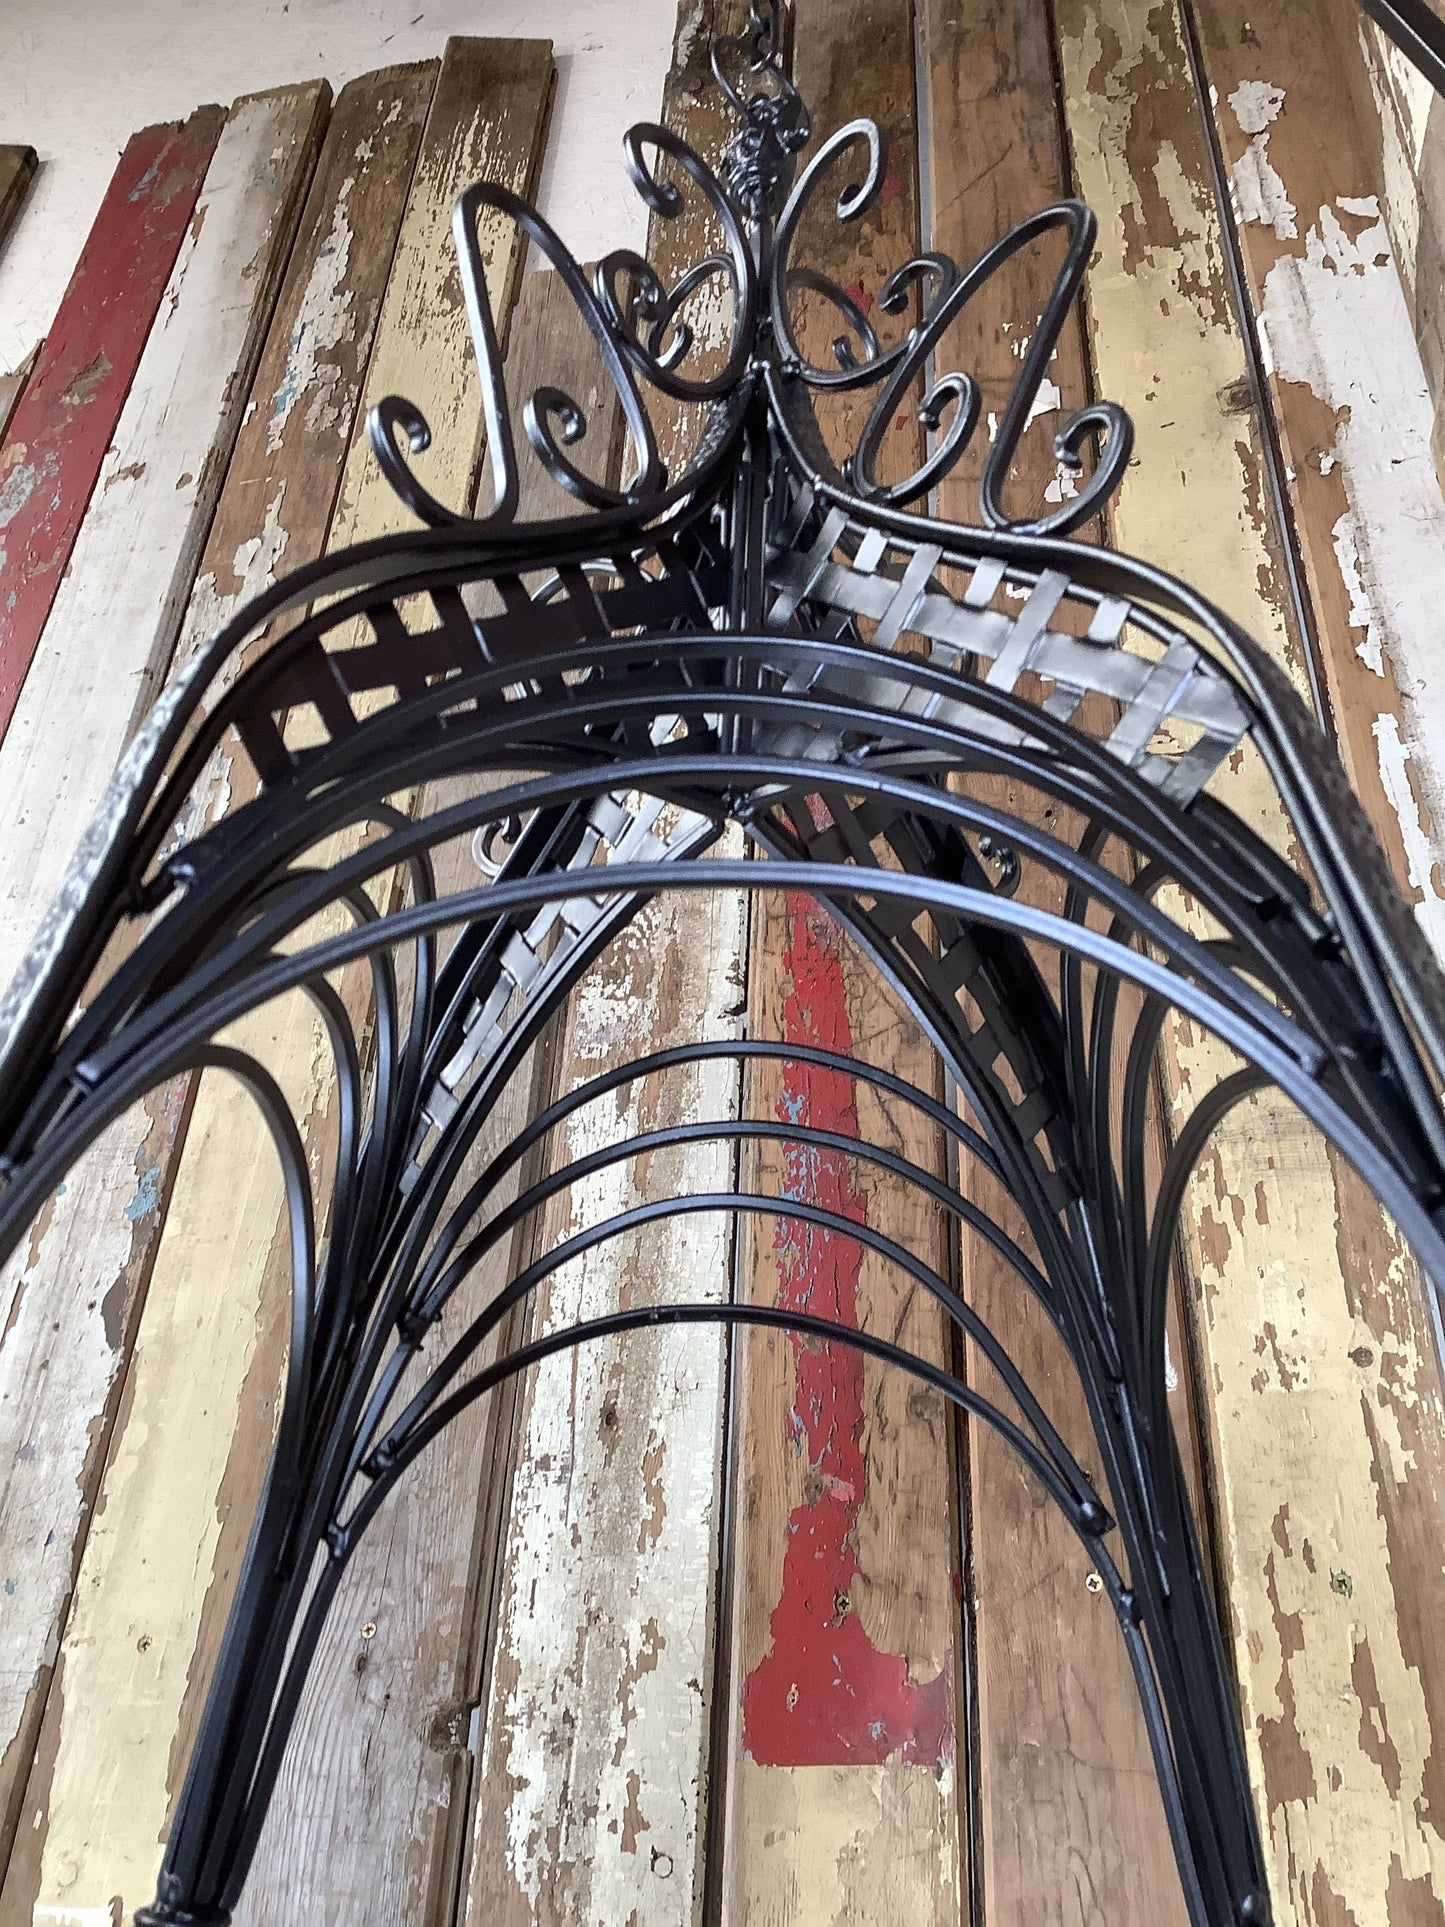 15” Large Antique Black French Style Wrought Iron Hanging Basket Amazing